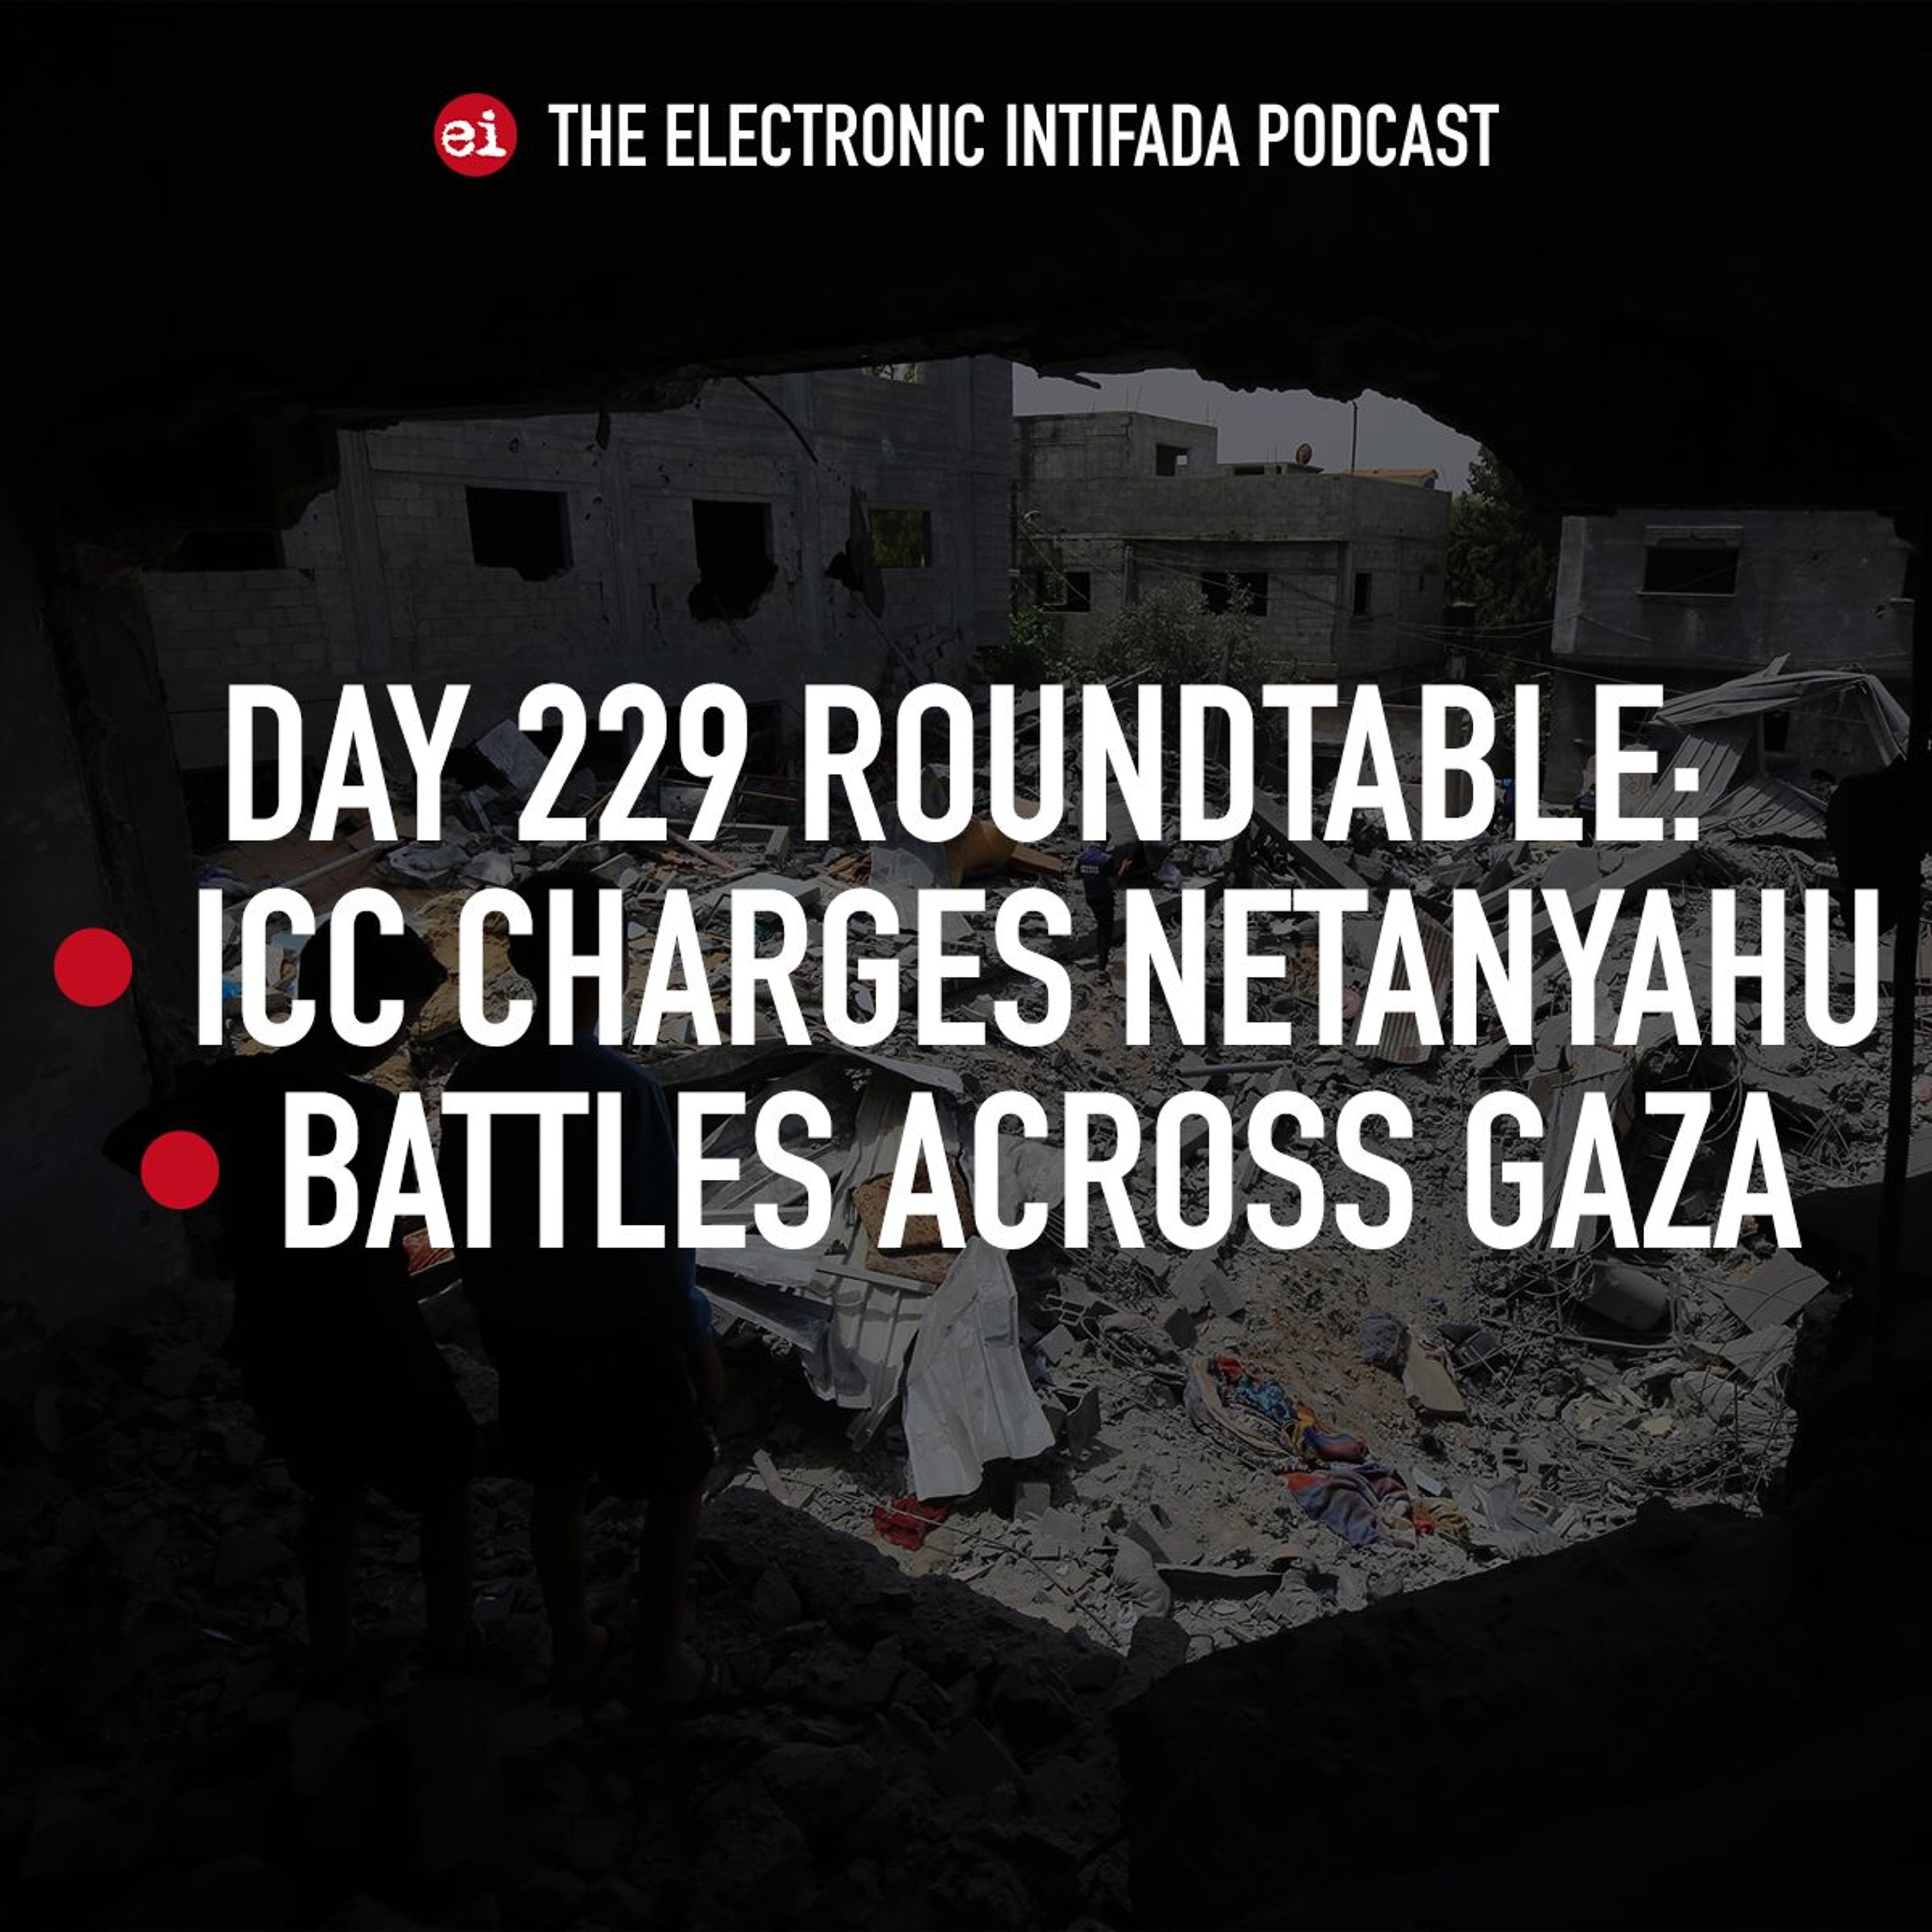 Day 229 roundtable: ICC charges Netanyahu, battles across Gaza